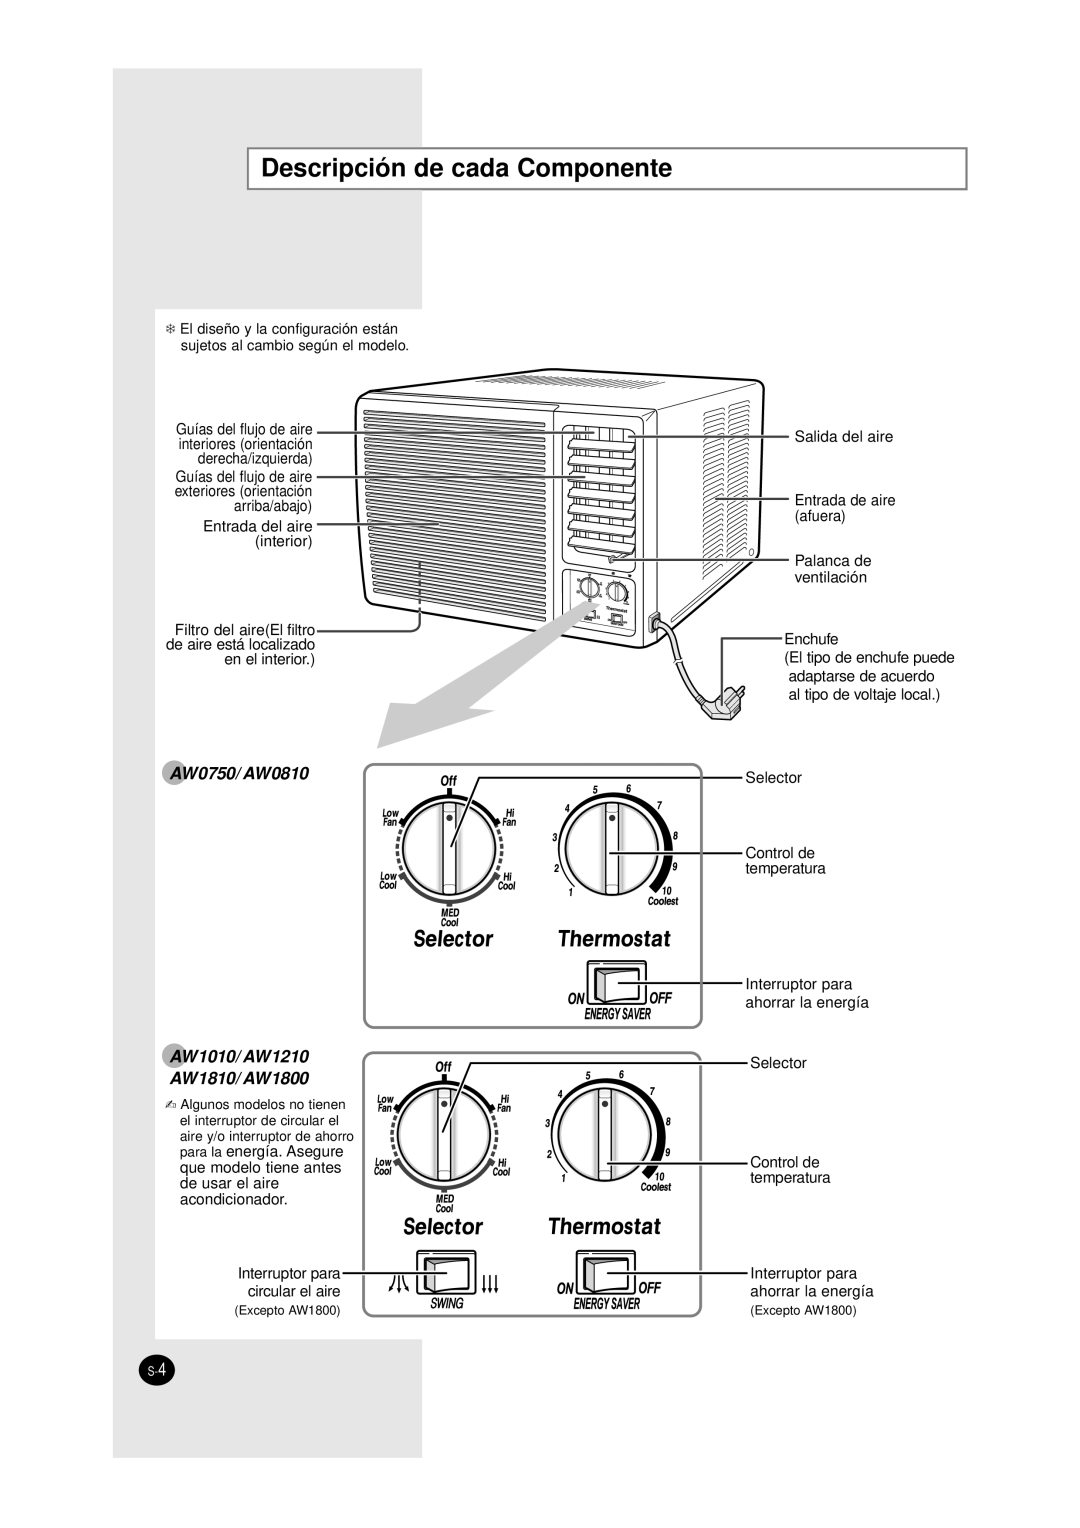 Samsung manual Descripción de cada Componente, AW0750/AW0810 AW1010/AW1210 AW1810/AW1800 